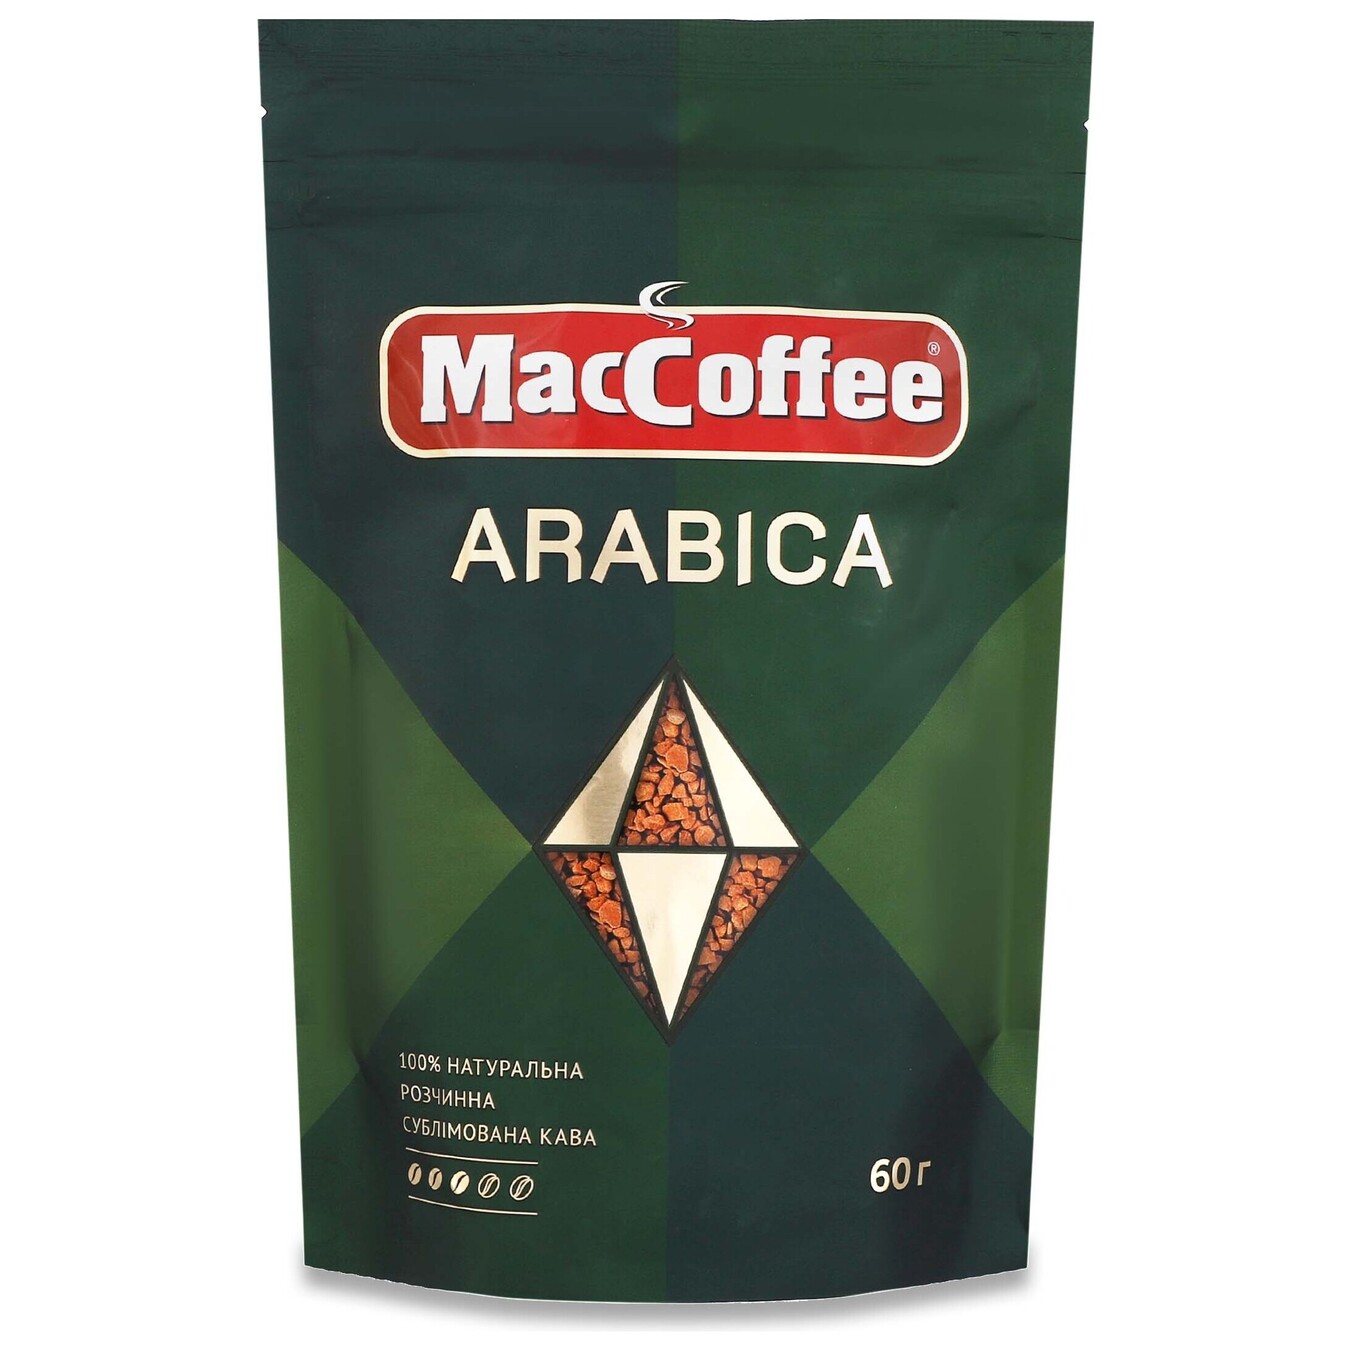 Instant coffee Arabica Mac Coffee 60g